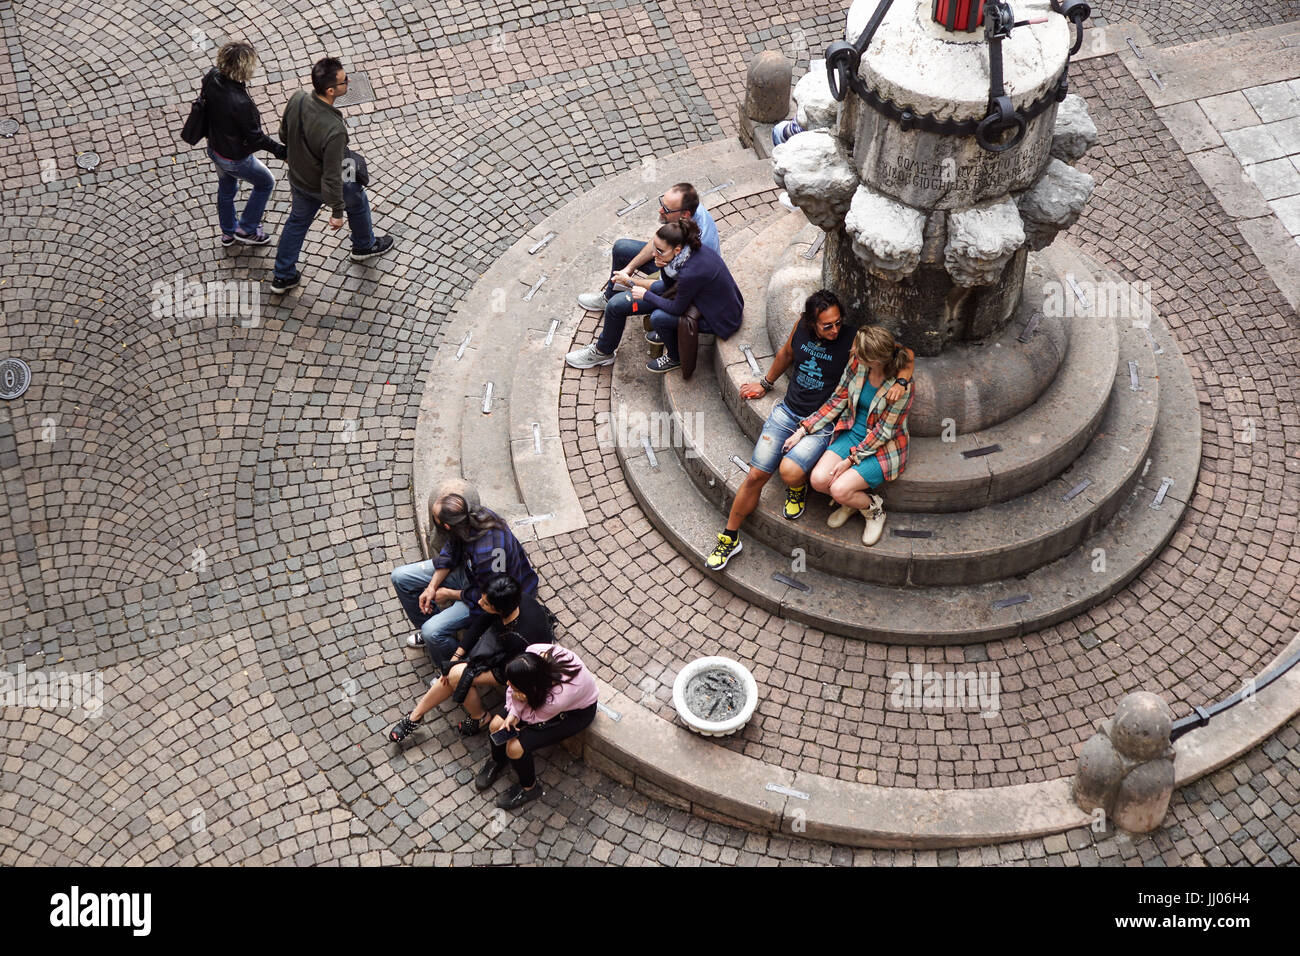 Roma, Italia - 24 novembre: Fontana del Naiads con turisti che si siedono sul bordo in Roma, Italia Foto Stock